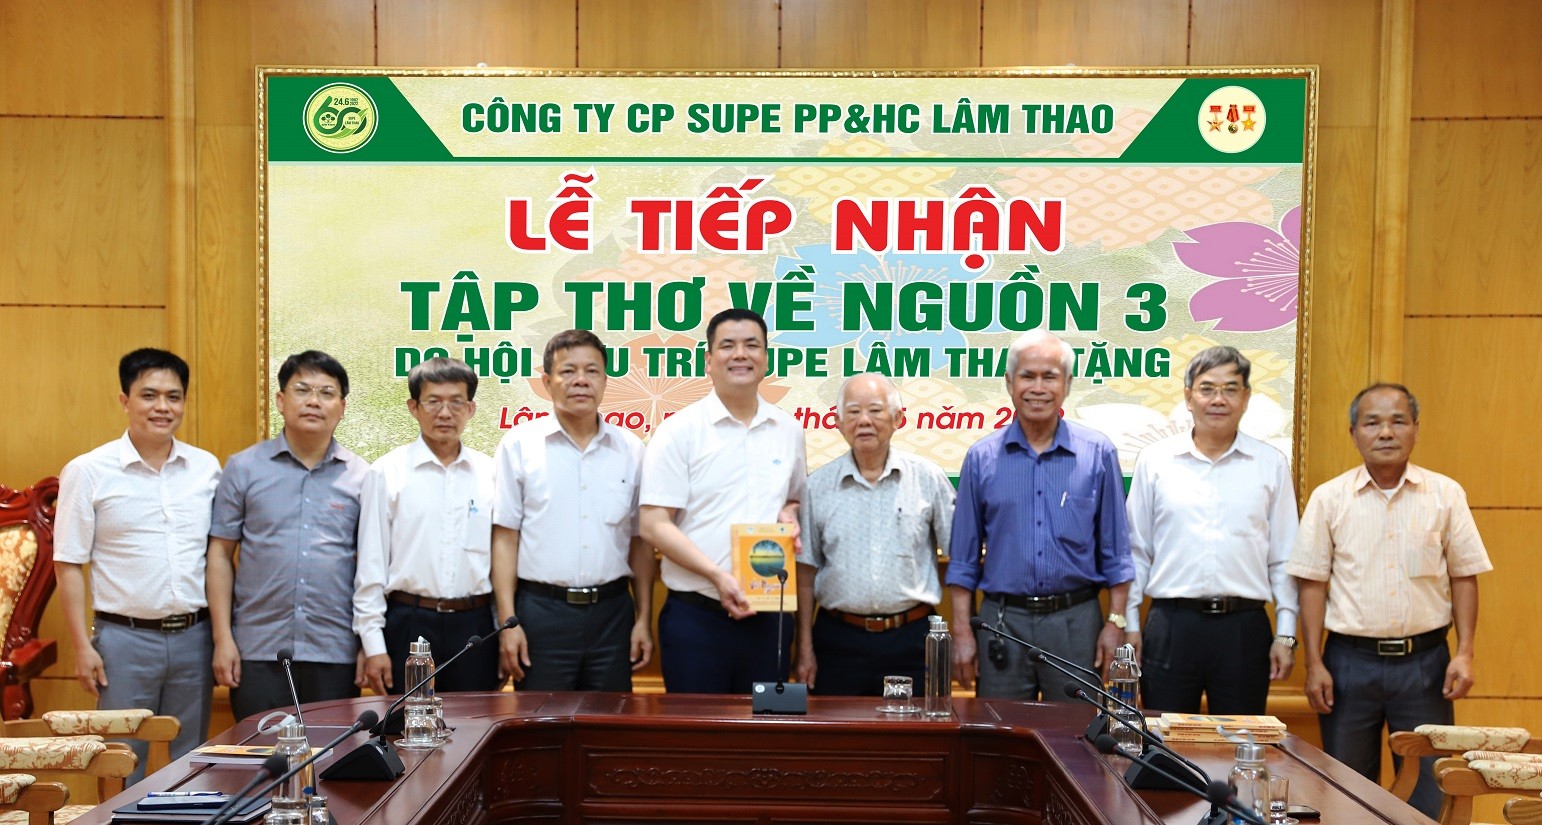 Hội Hưu trí Supe Lâm Thao trao tặng  100 cuốn Thơ-Văn-Nhạc “Về nguồn 3” cho Công ty.